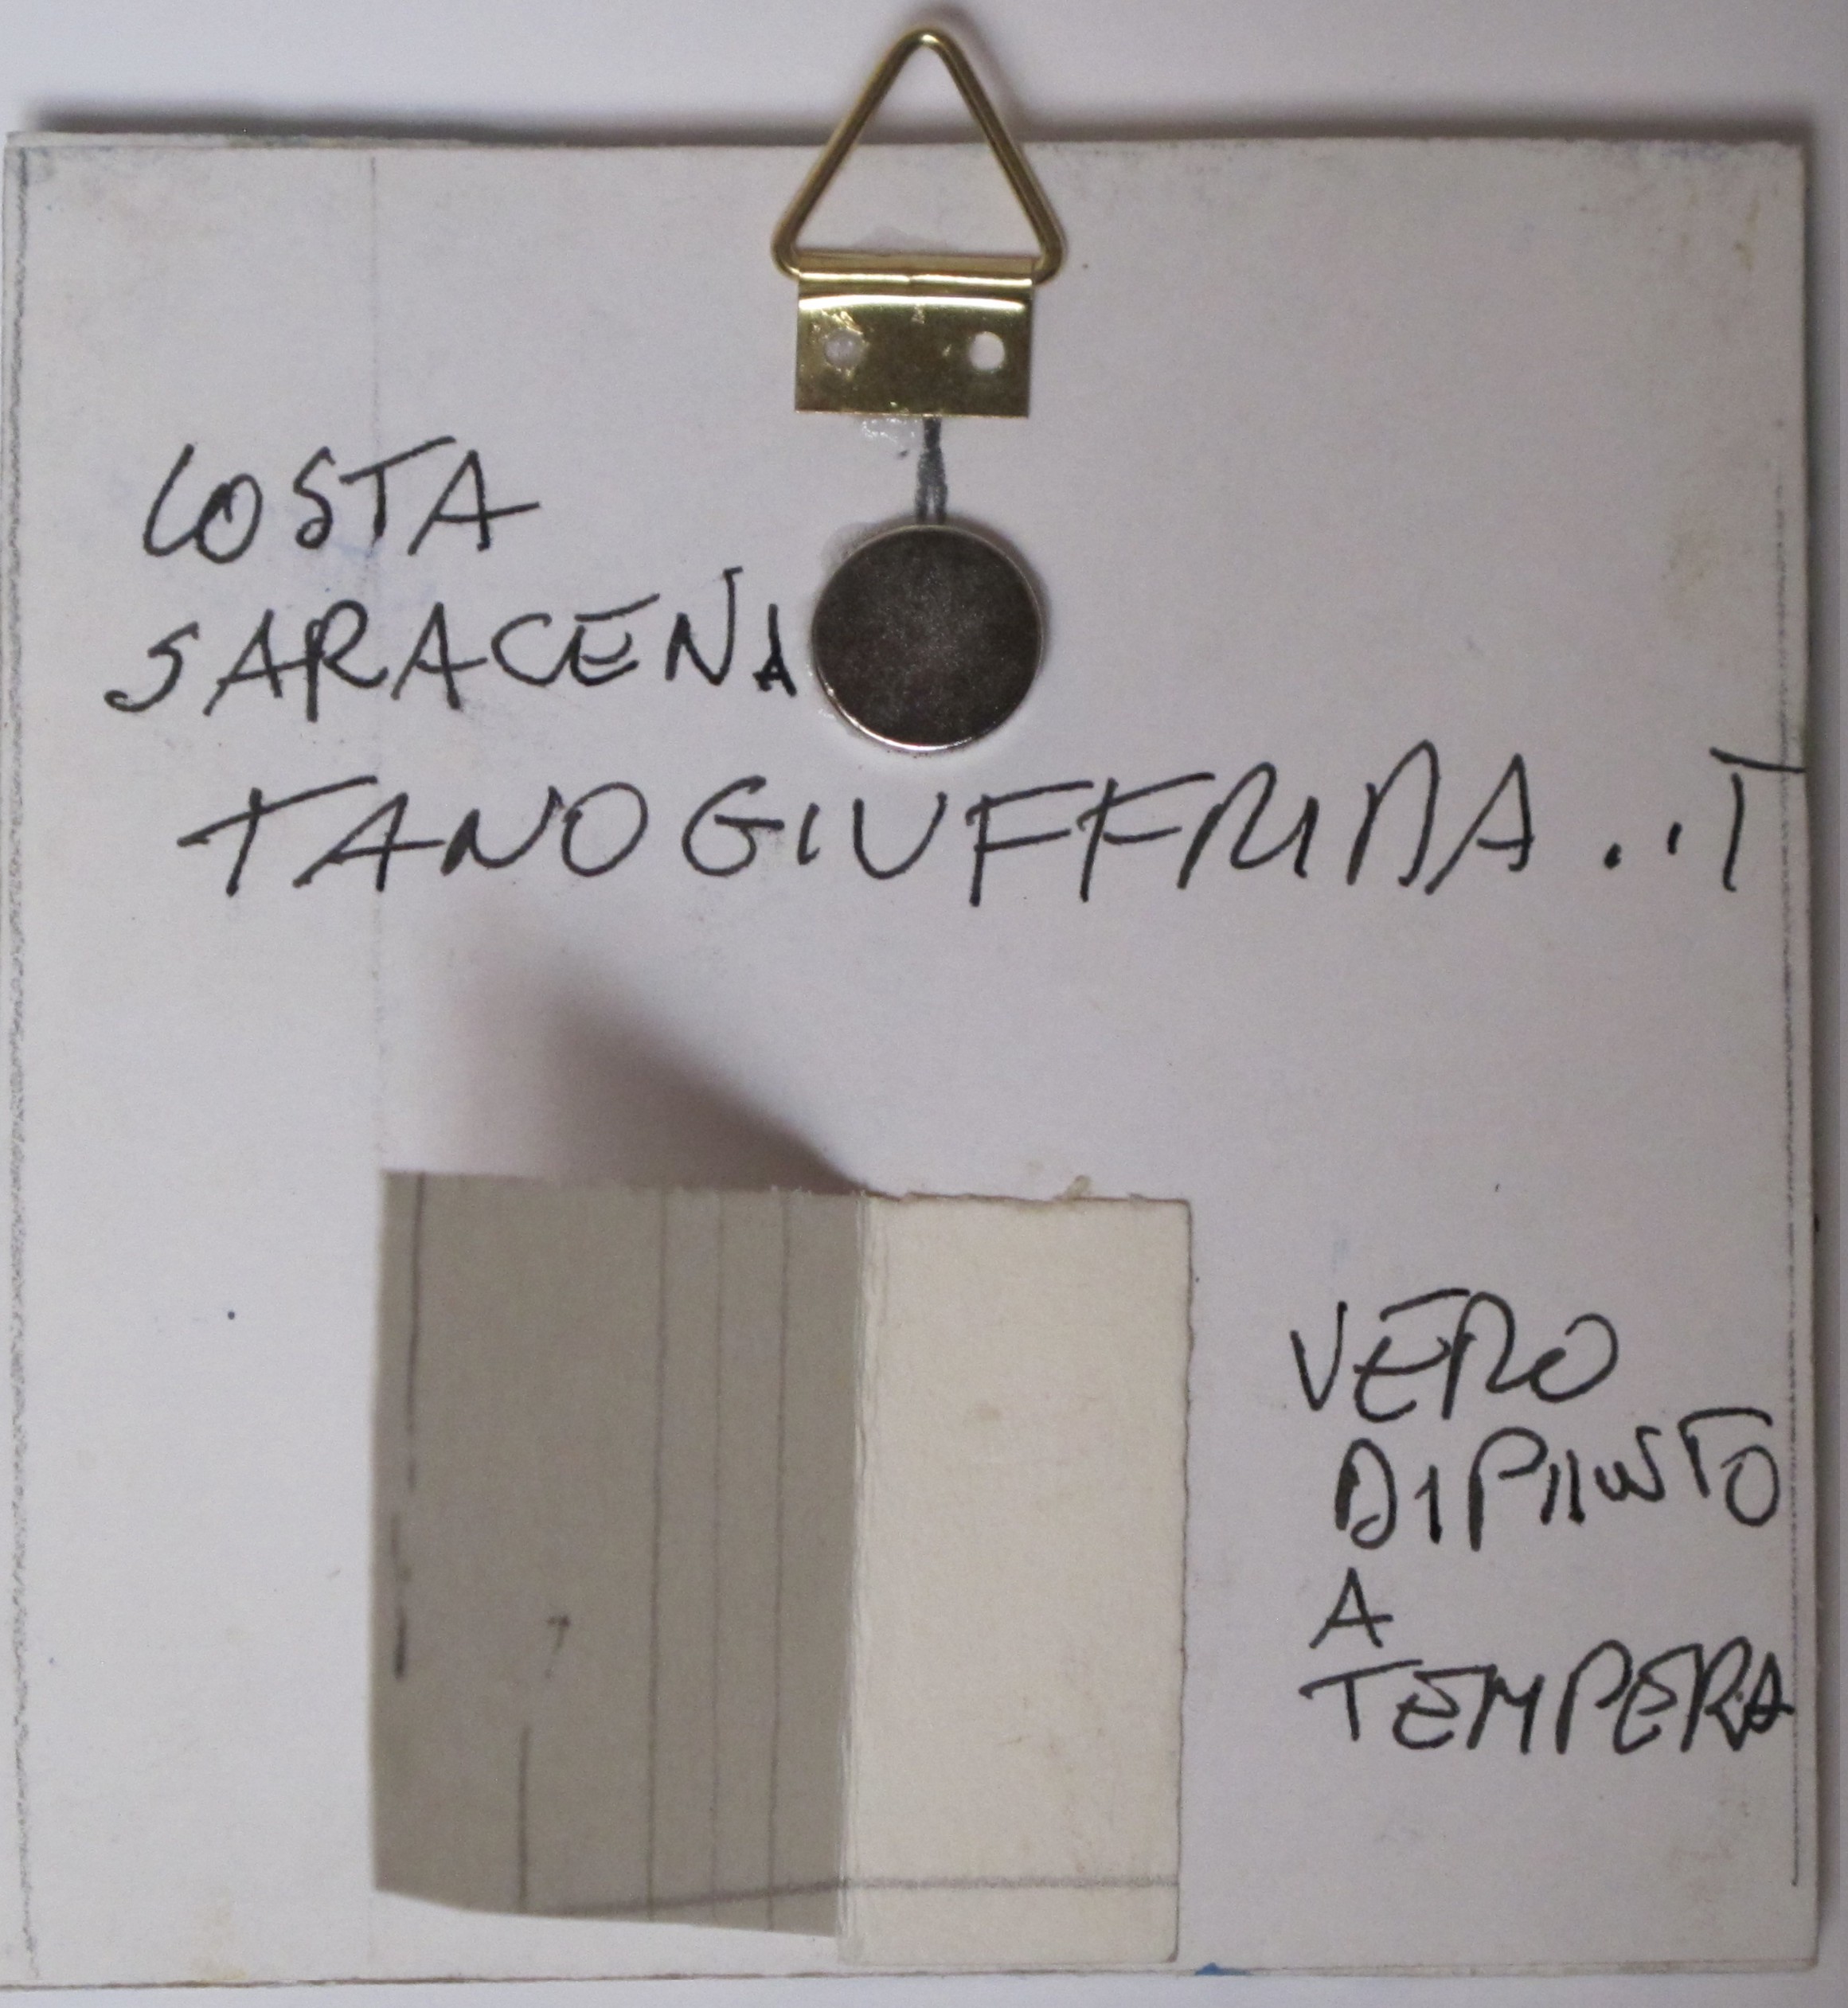 COSTA SARACENA di Tano Giuffrida. Acquerello cm 8 x 8, magnete.